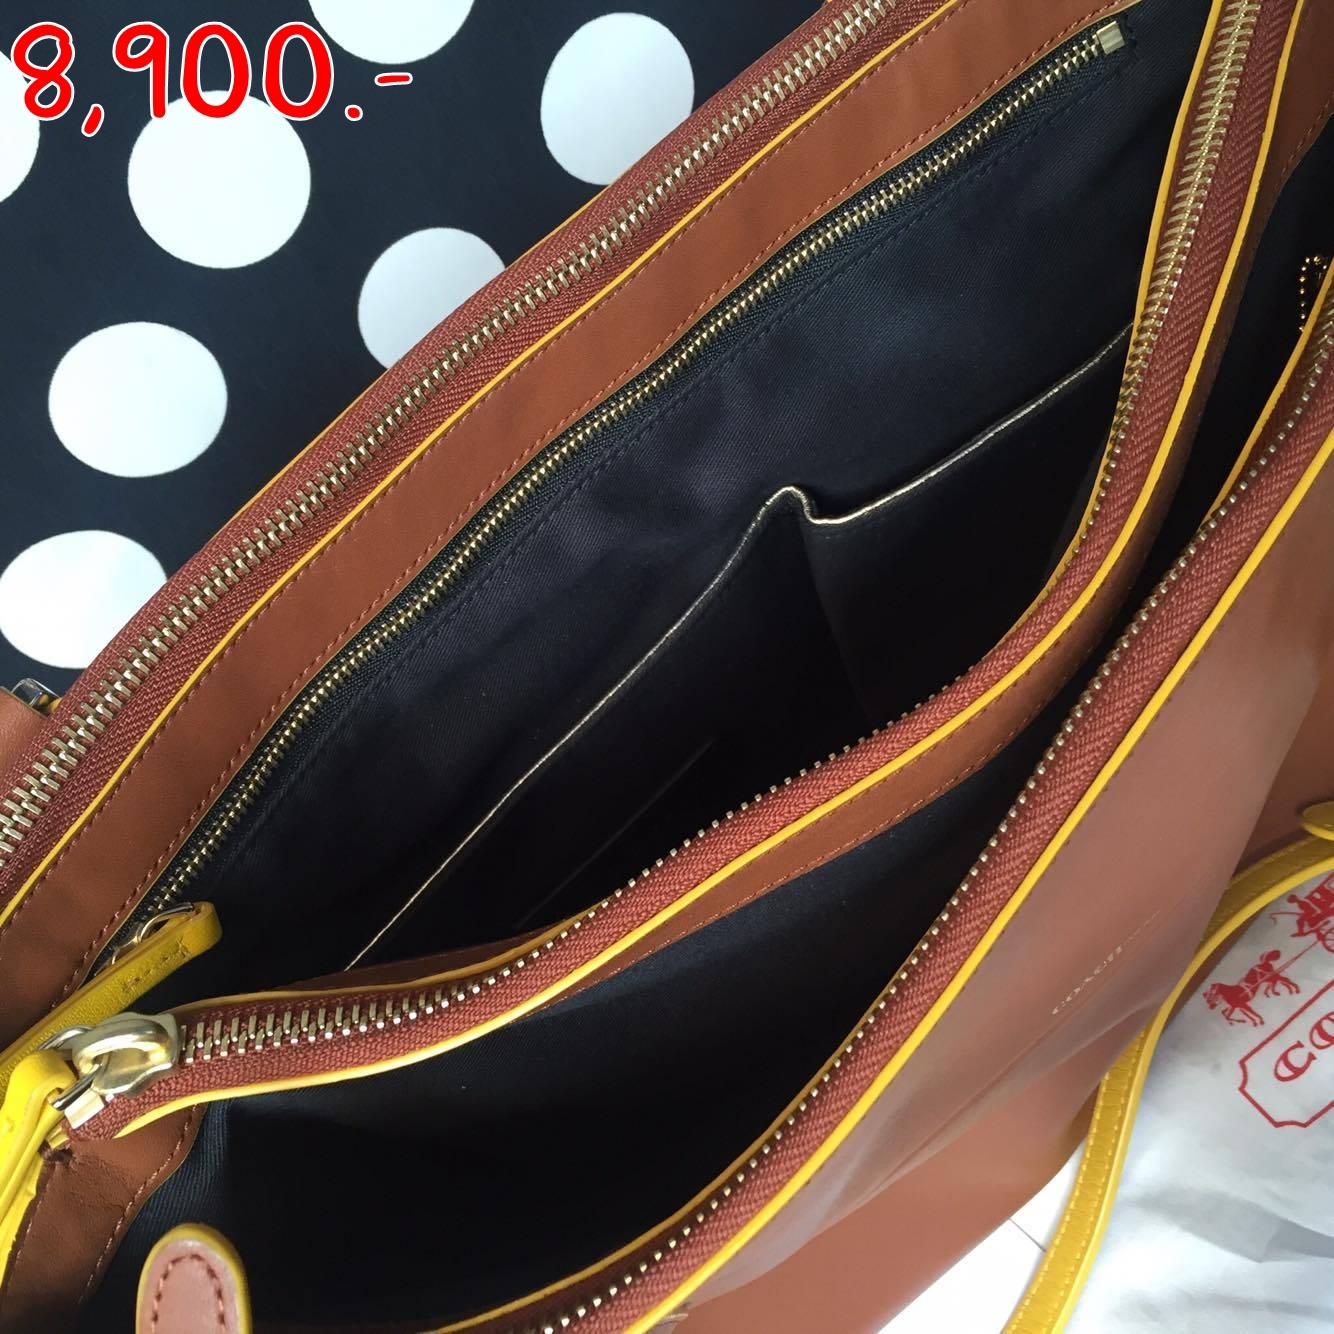 ราคา 8,900 บาท Coach รหัส F30982 Borough Bag Leather with Sunglow Edgepaint Coach แท้ สภาพ 98% ใช้ไป 1 ครั้ง ใหม่มาก มีสายกระเป๋า การ์ด และถุงผ้าค่ะ ซื้อมาจาก shop ต่างประเทศ 12,000 ขาย